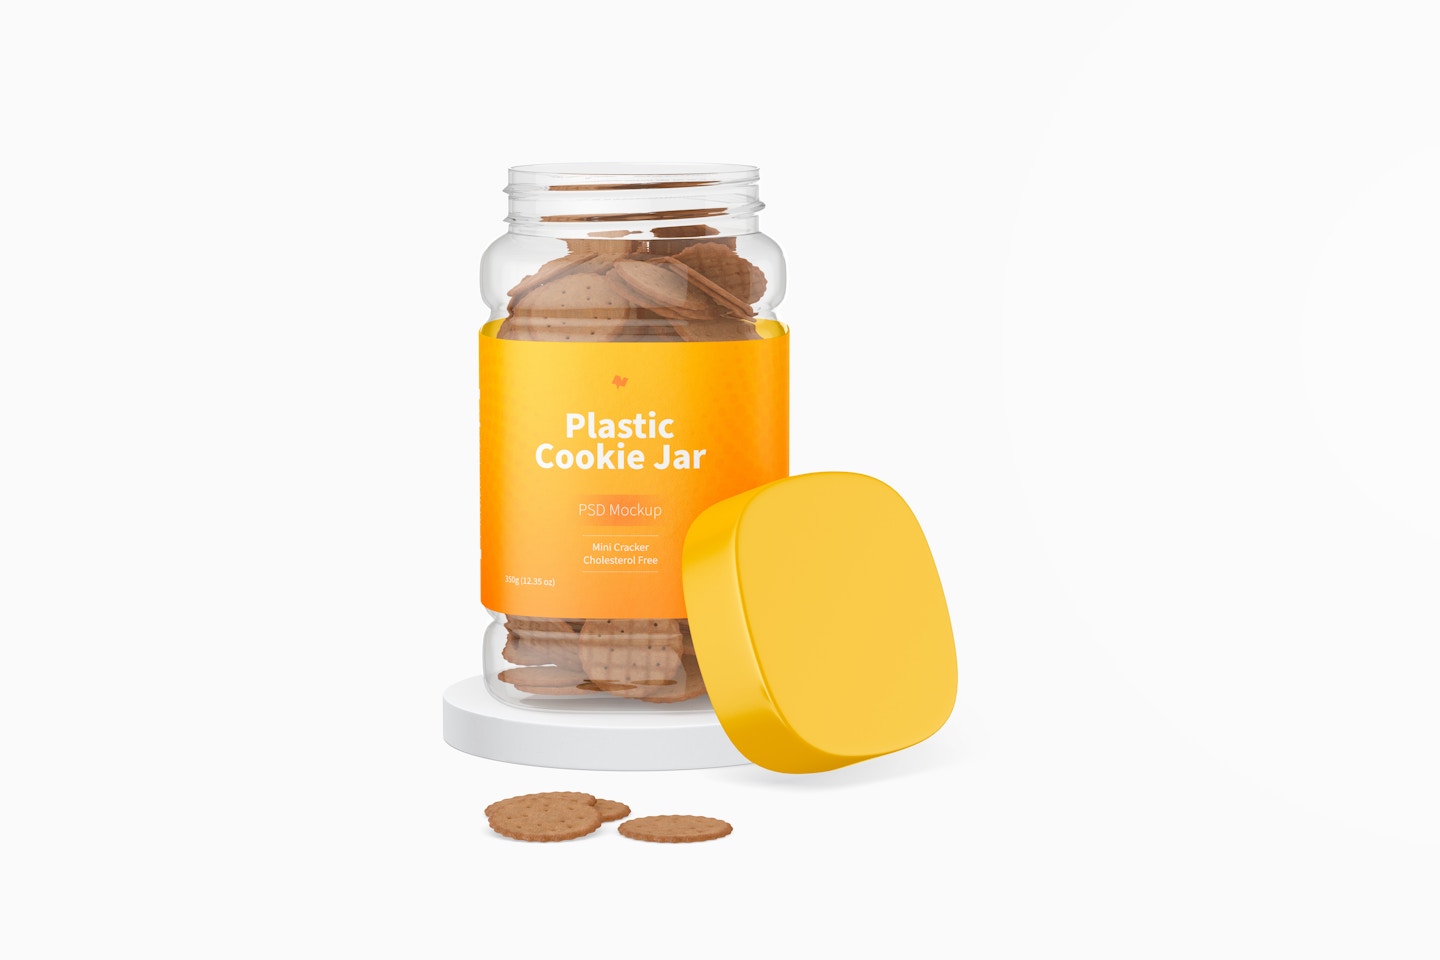 Plastic Cookie Jar Mockup, Opened